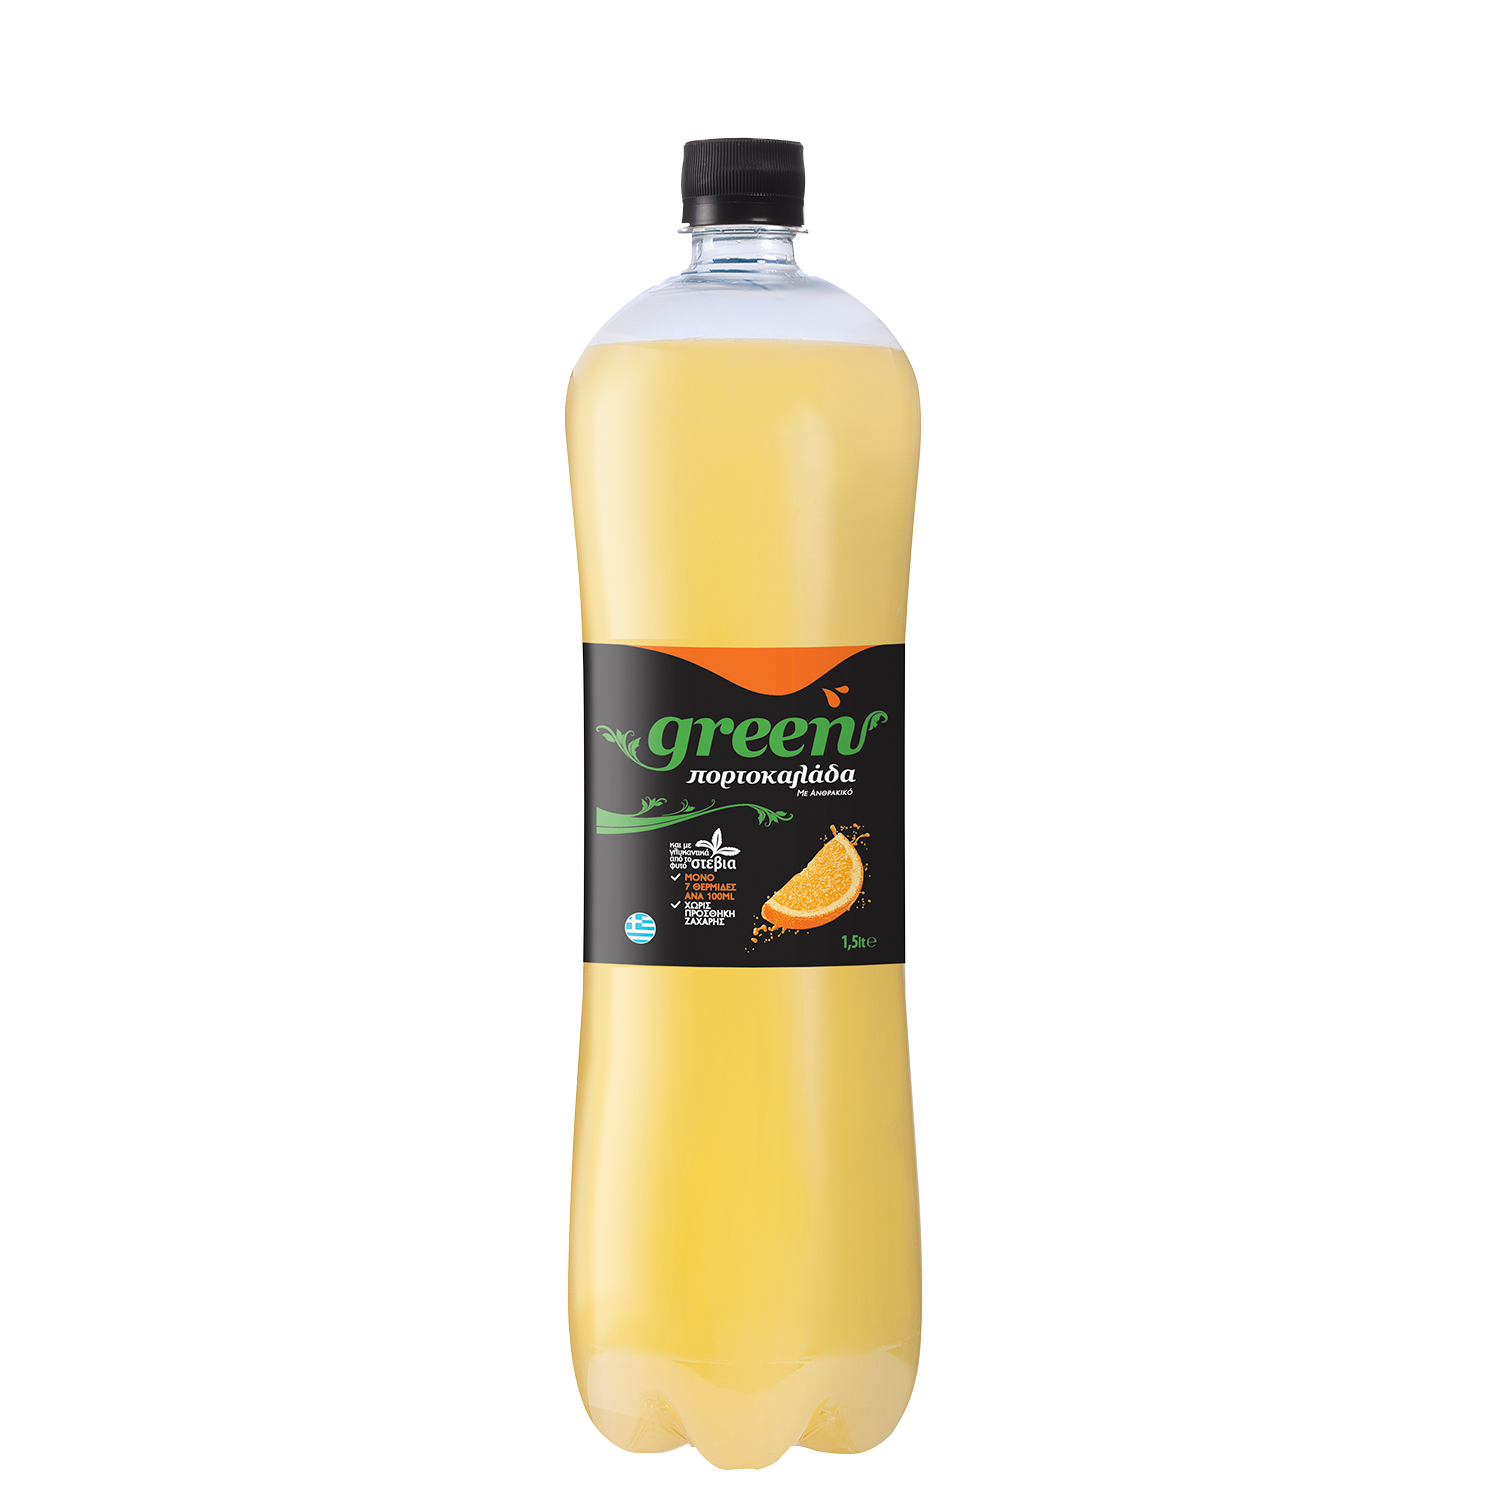 Green Orange - PET - 1.5ml Bottle